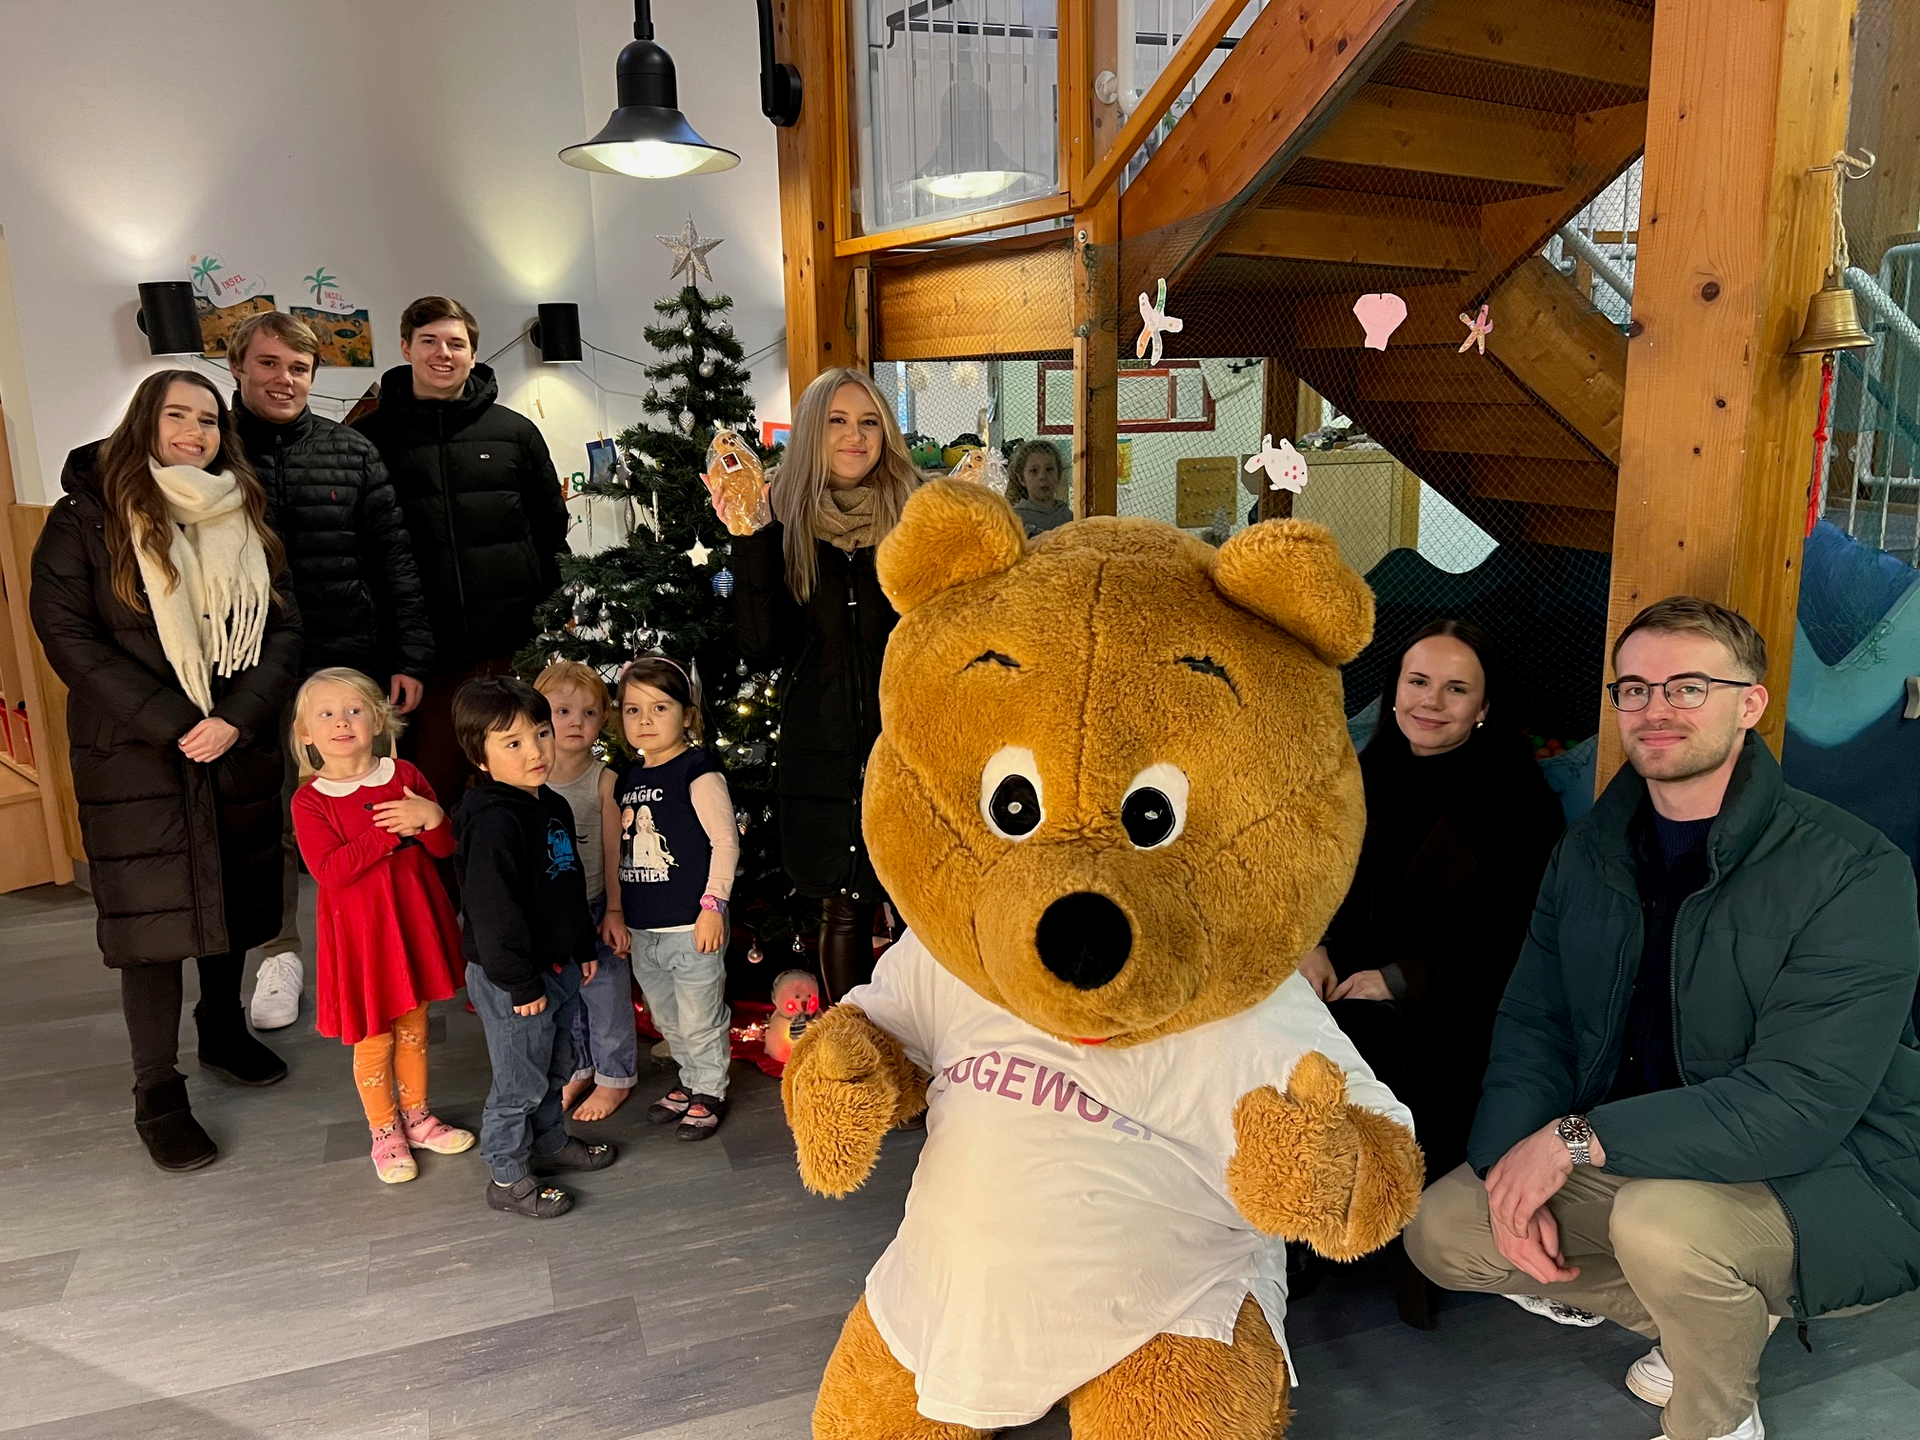 Mehrere Kinder und junge Erwachsene lächeln gemeinsam mit ein lebensgroßes Bärenmaskottchen in einer Kindertageseinrichtung in Richtung des Fotografen